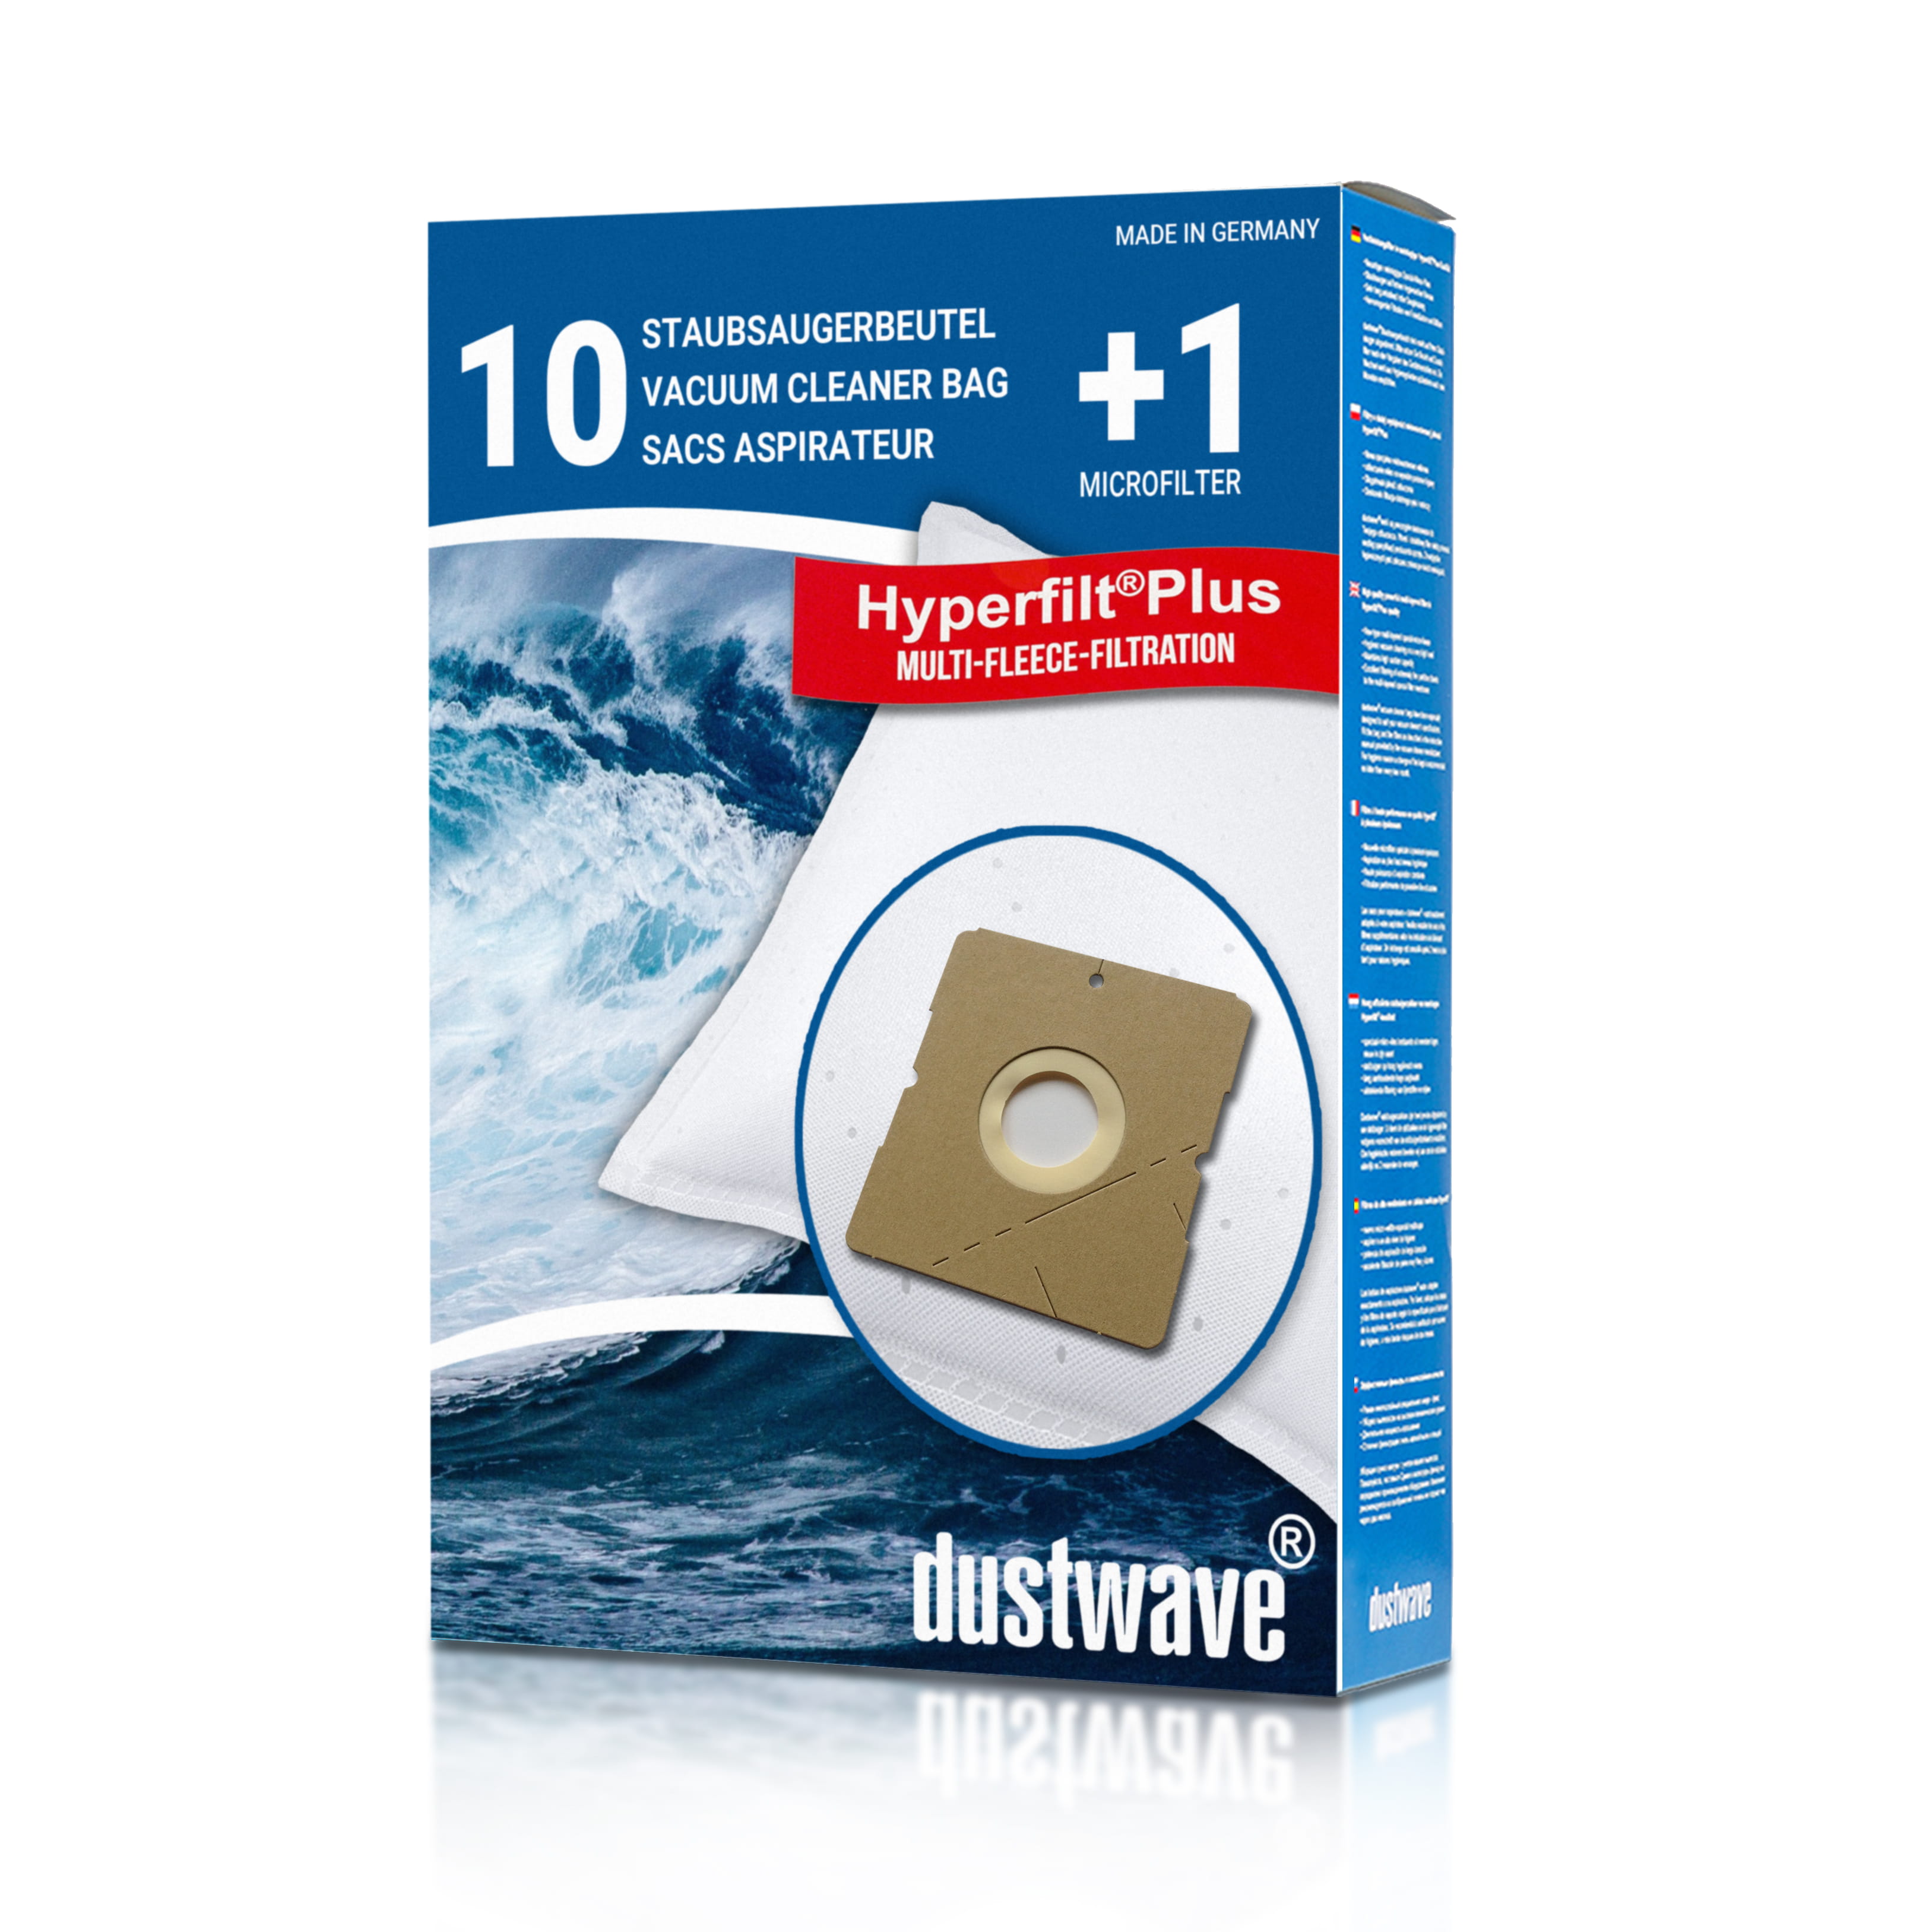 Dustwave® 10 Staubsaugerbeutel für Emerio VE-108312 - hocheffizient mit Hygieneverschluss - Made in Germany